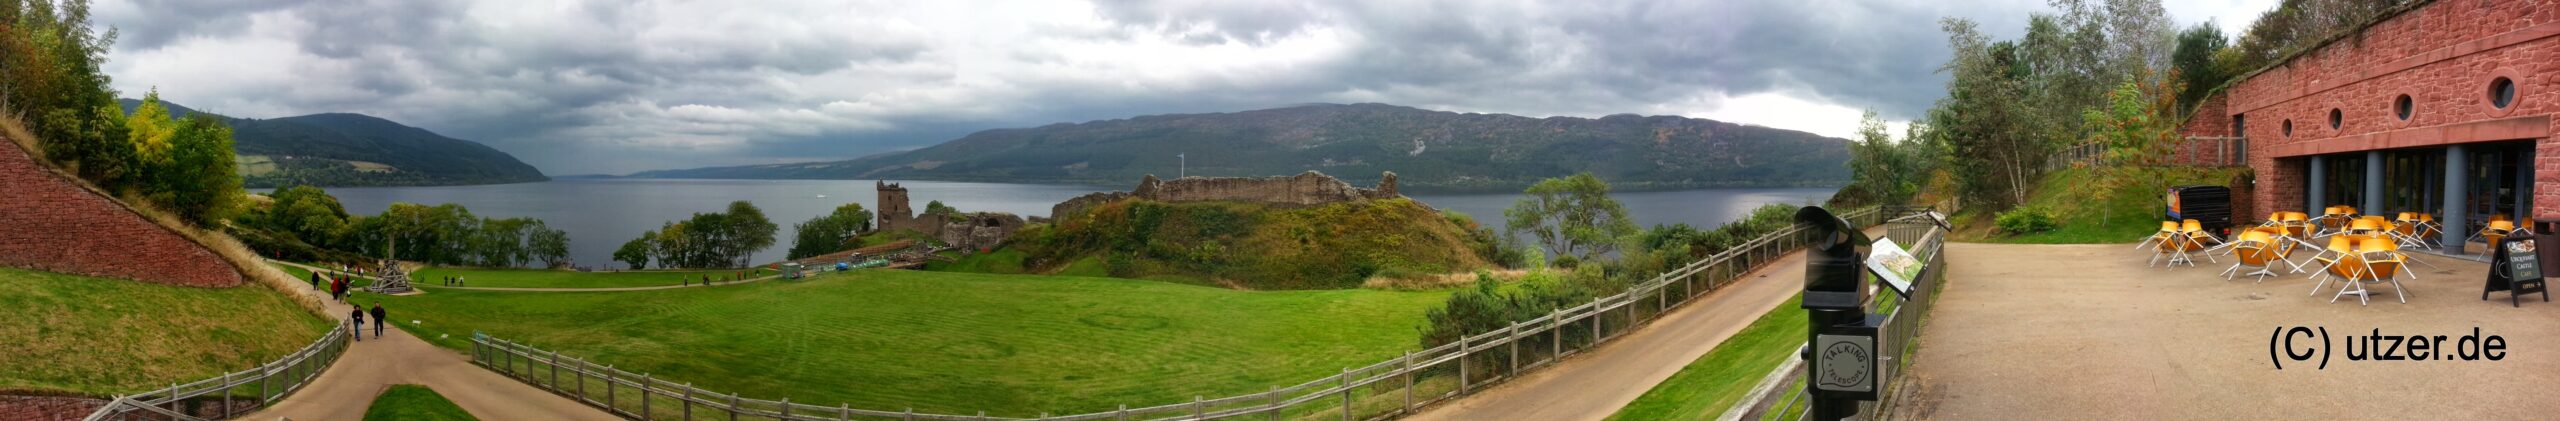 Panorama von Urquhart Castle. Hier bitte auch zoomen :-D